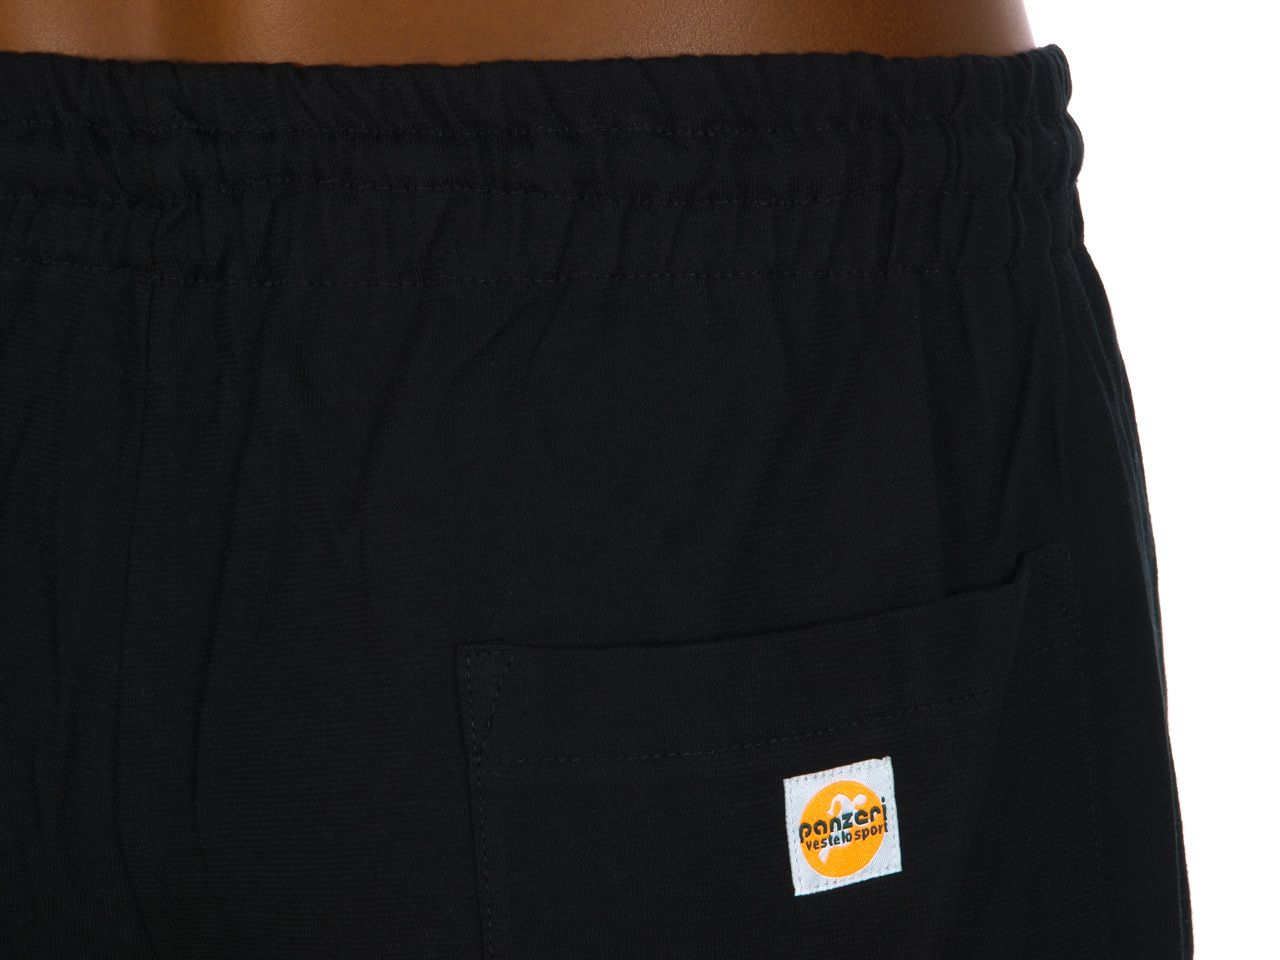 Pantalon de survêtement Panzeri Uni h noir/or jersey pant Noir 64555 Neuf